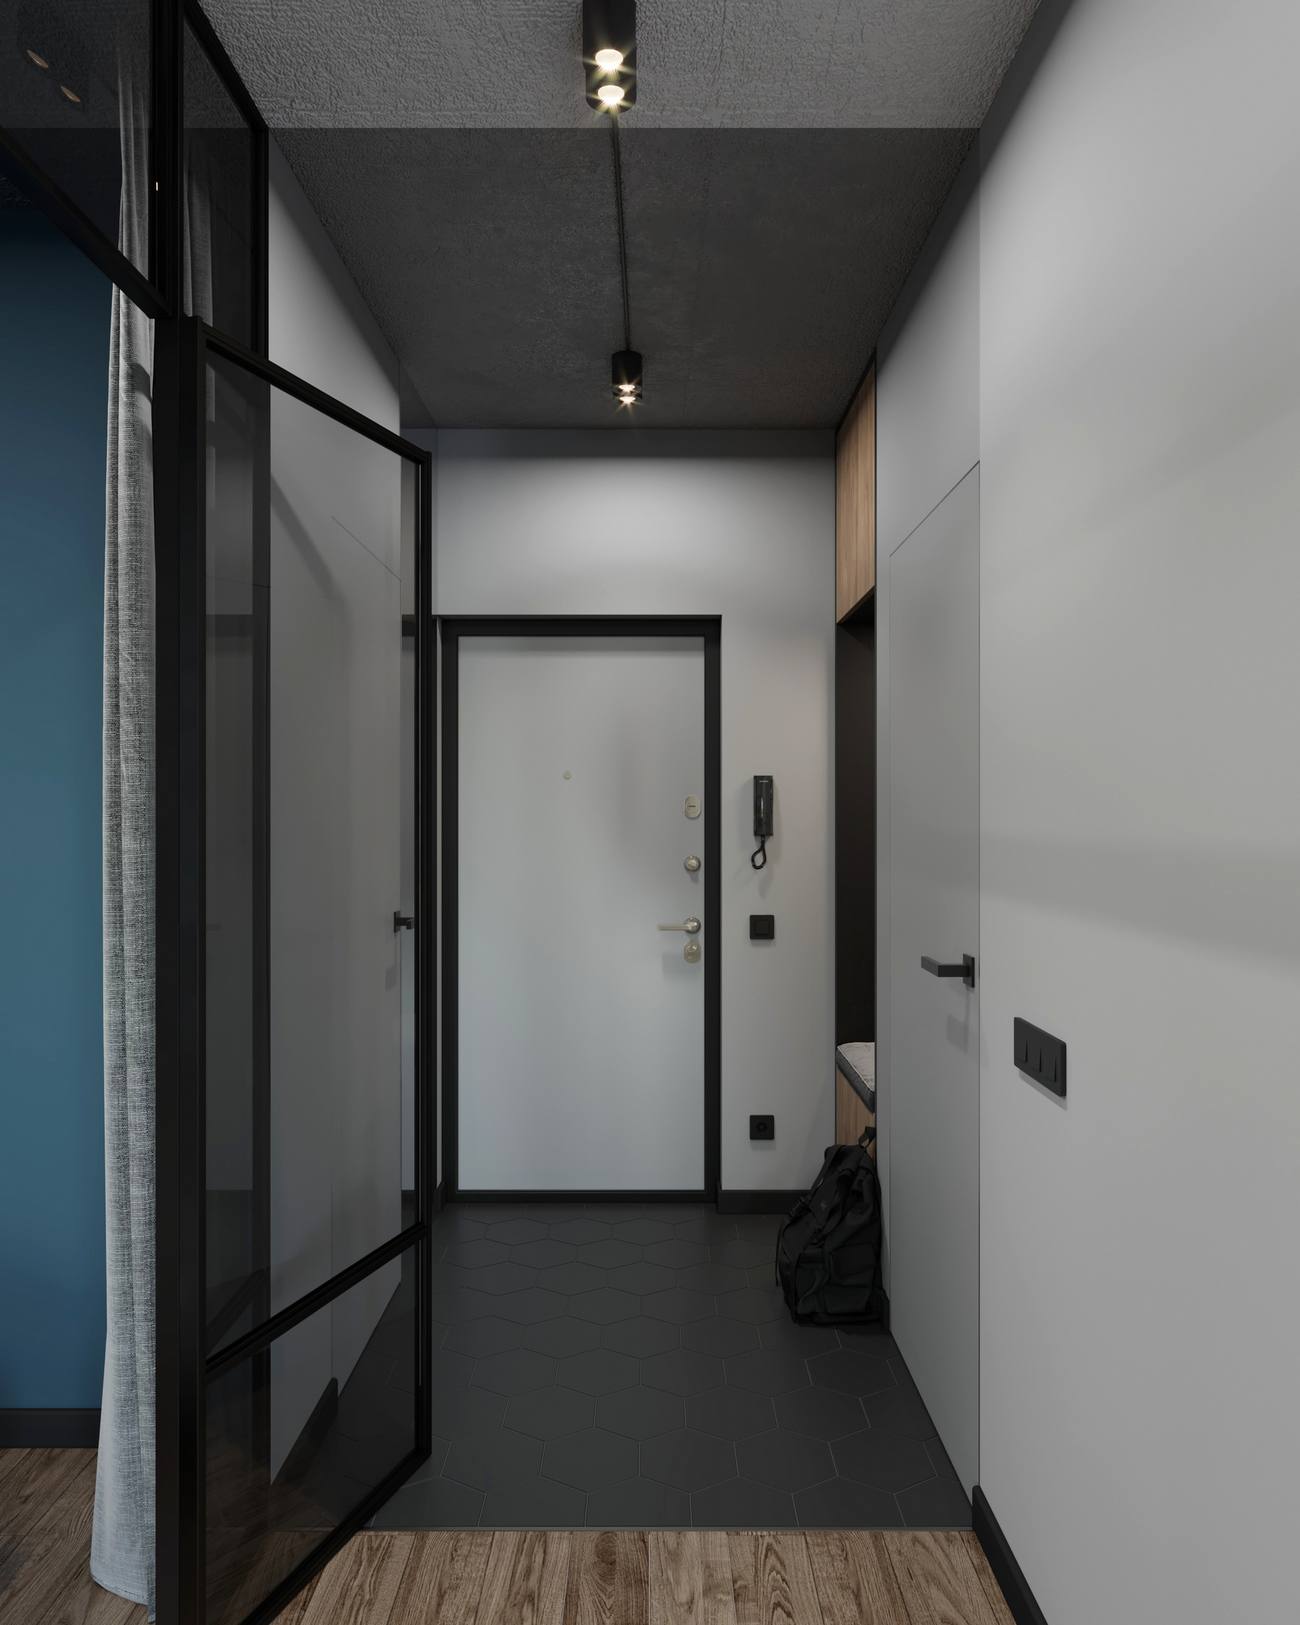 Lối vào căn hộ tạo sự bí ẩn ngay từ cái nhìn đầu tiên khi chỉ sử dụng gam màu tường xám nhạt, cửa viền khung màu đen và gạch lát sàn hình lục giác cũng đen tuyền như thế!